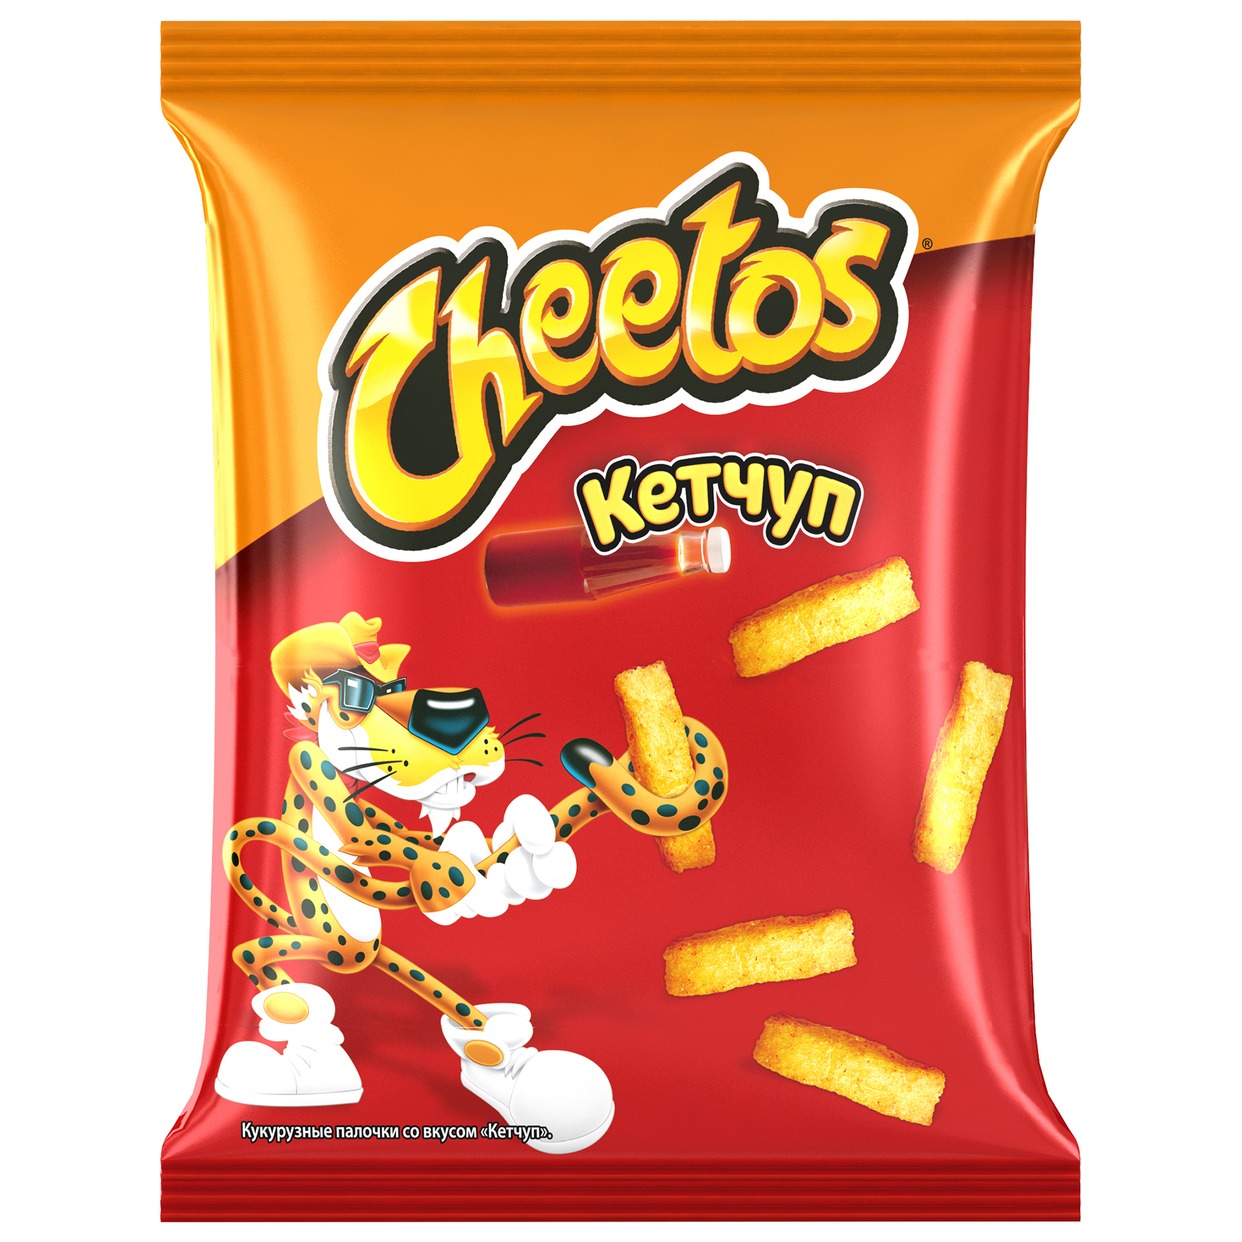 Палочки Cheetos кукурузные Кетчуп 55г по акции в Пятерочке